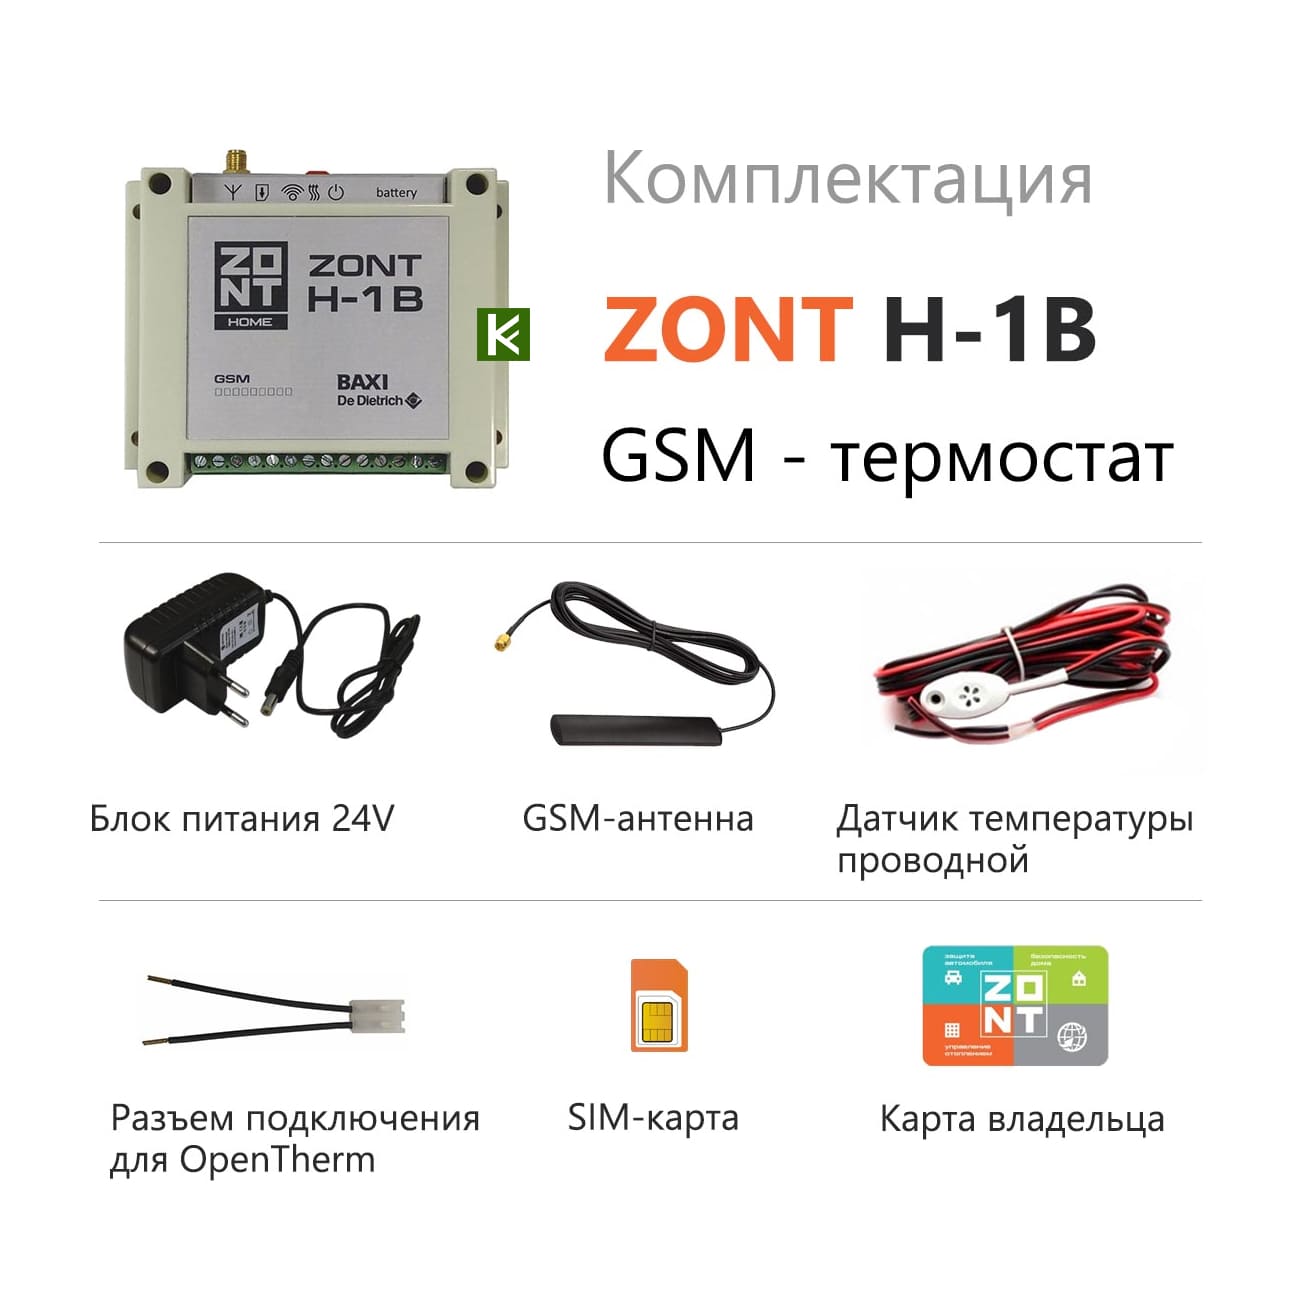 Zont v. Zont h-1v Baxi OPENTHERM. GSM Zont h-1v. Система удаленного управления котлом Zont-h1b Baxi. Zont h-1 контроллер.